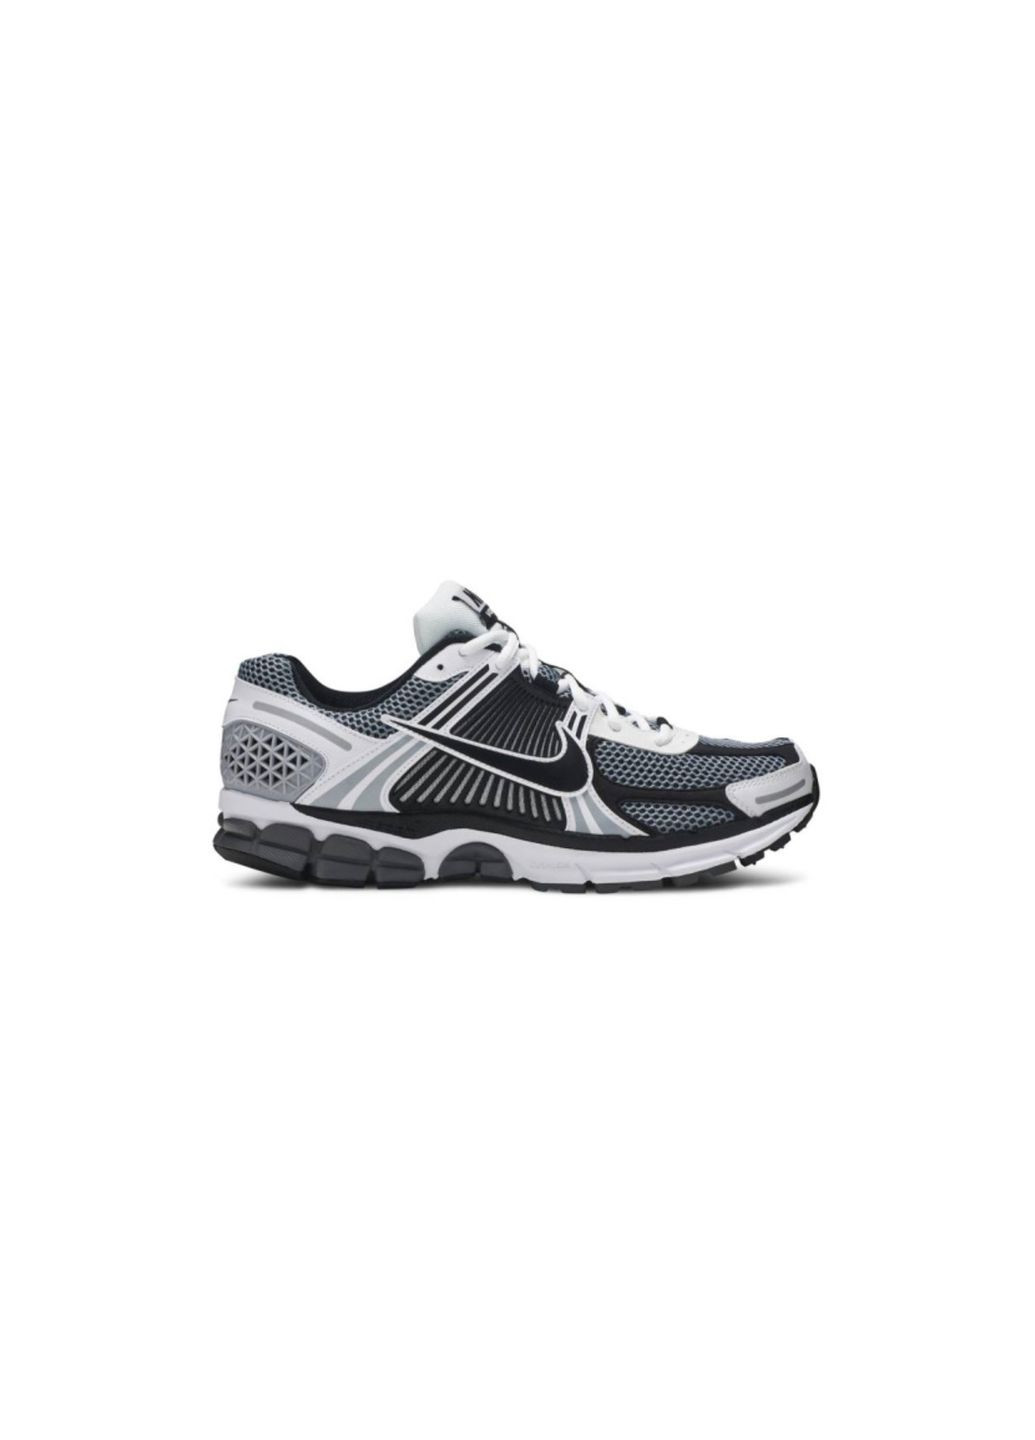 Цветные демисезонные кроссовки мужские zoom dark grey black white, вьетнам Nike Vomero 5